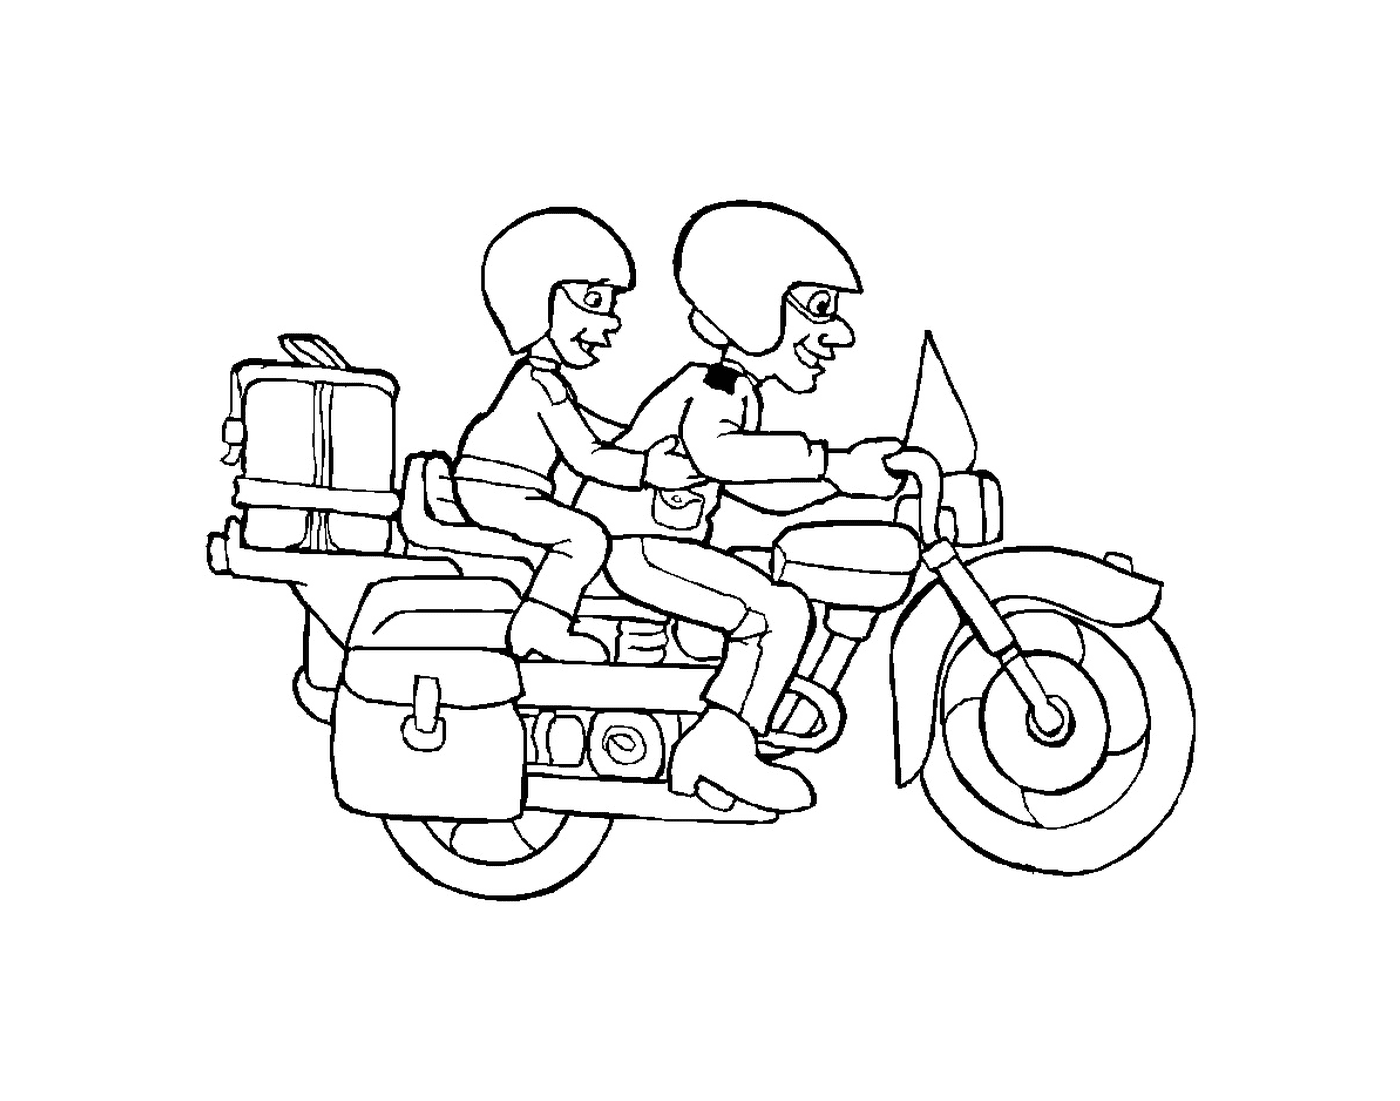   Deux personnes sur une moto 